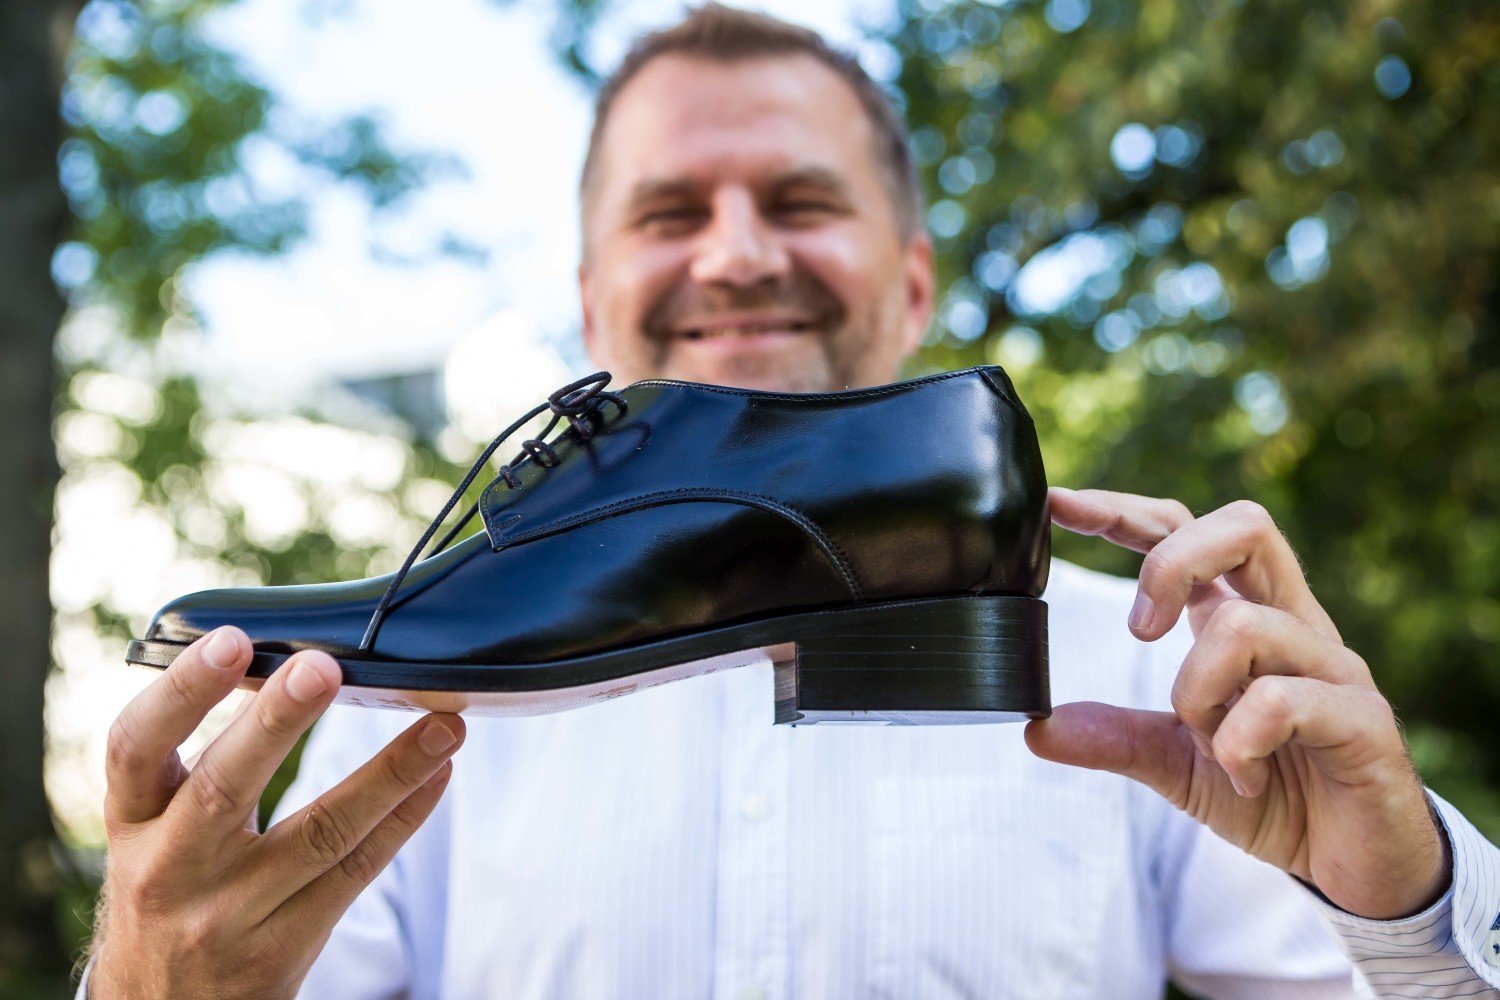 Buty podwyższające dla mężczyzn. Dodają pewności siebie i kilka centymetrów  [ZDJĘCIA,WIDEO] | Warszawa Nasze Miasto